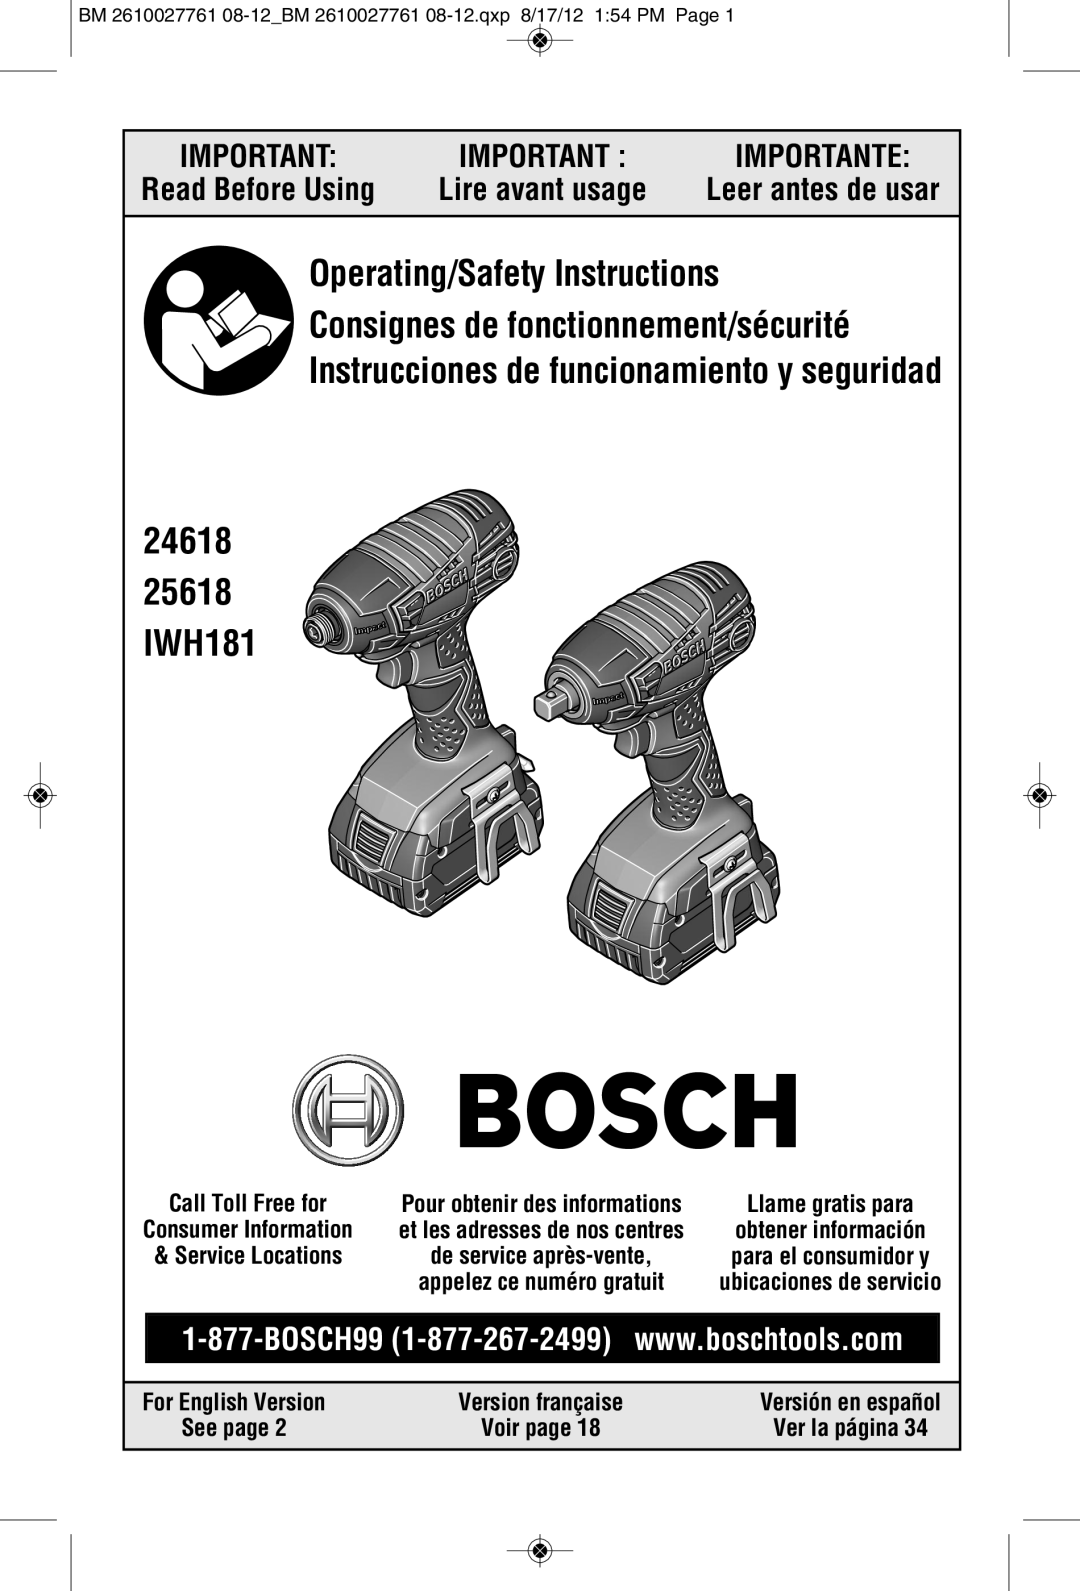 Bosch Power Tools 25618-01 manual Read Before Using, Leer antes de usar, Ver la página, 24618 25618 IWH181, Importante 